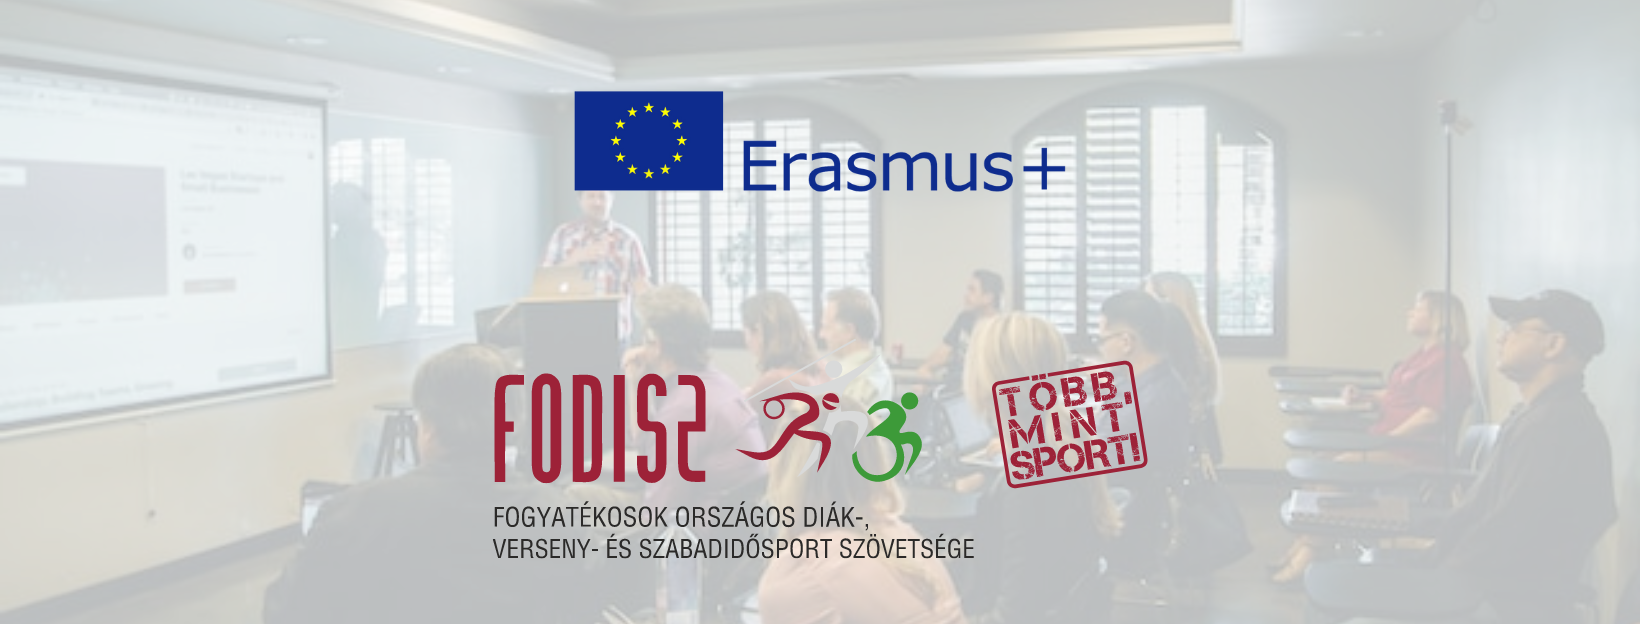 Lezajlott a FODISZ és az Erasmus+ nemzetközi tréningje